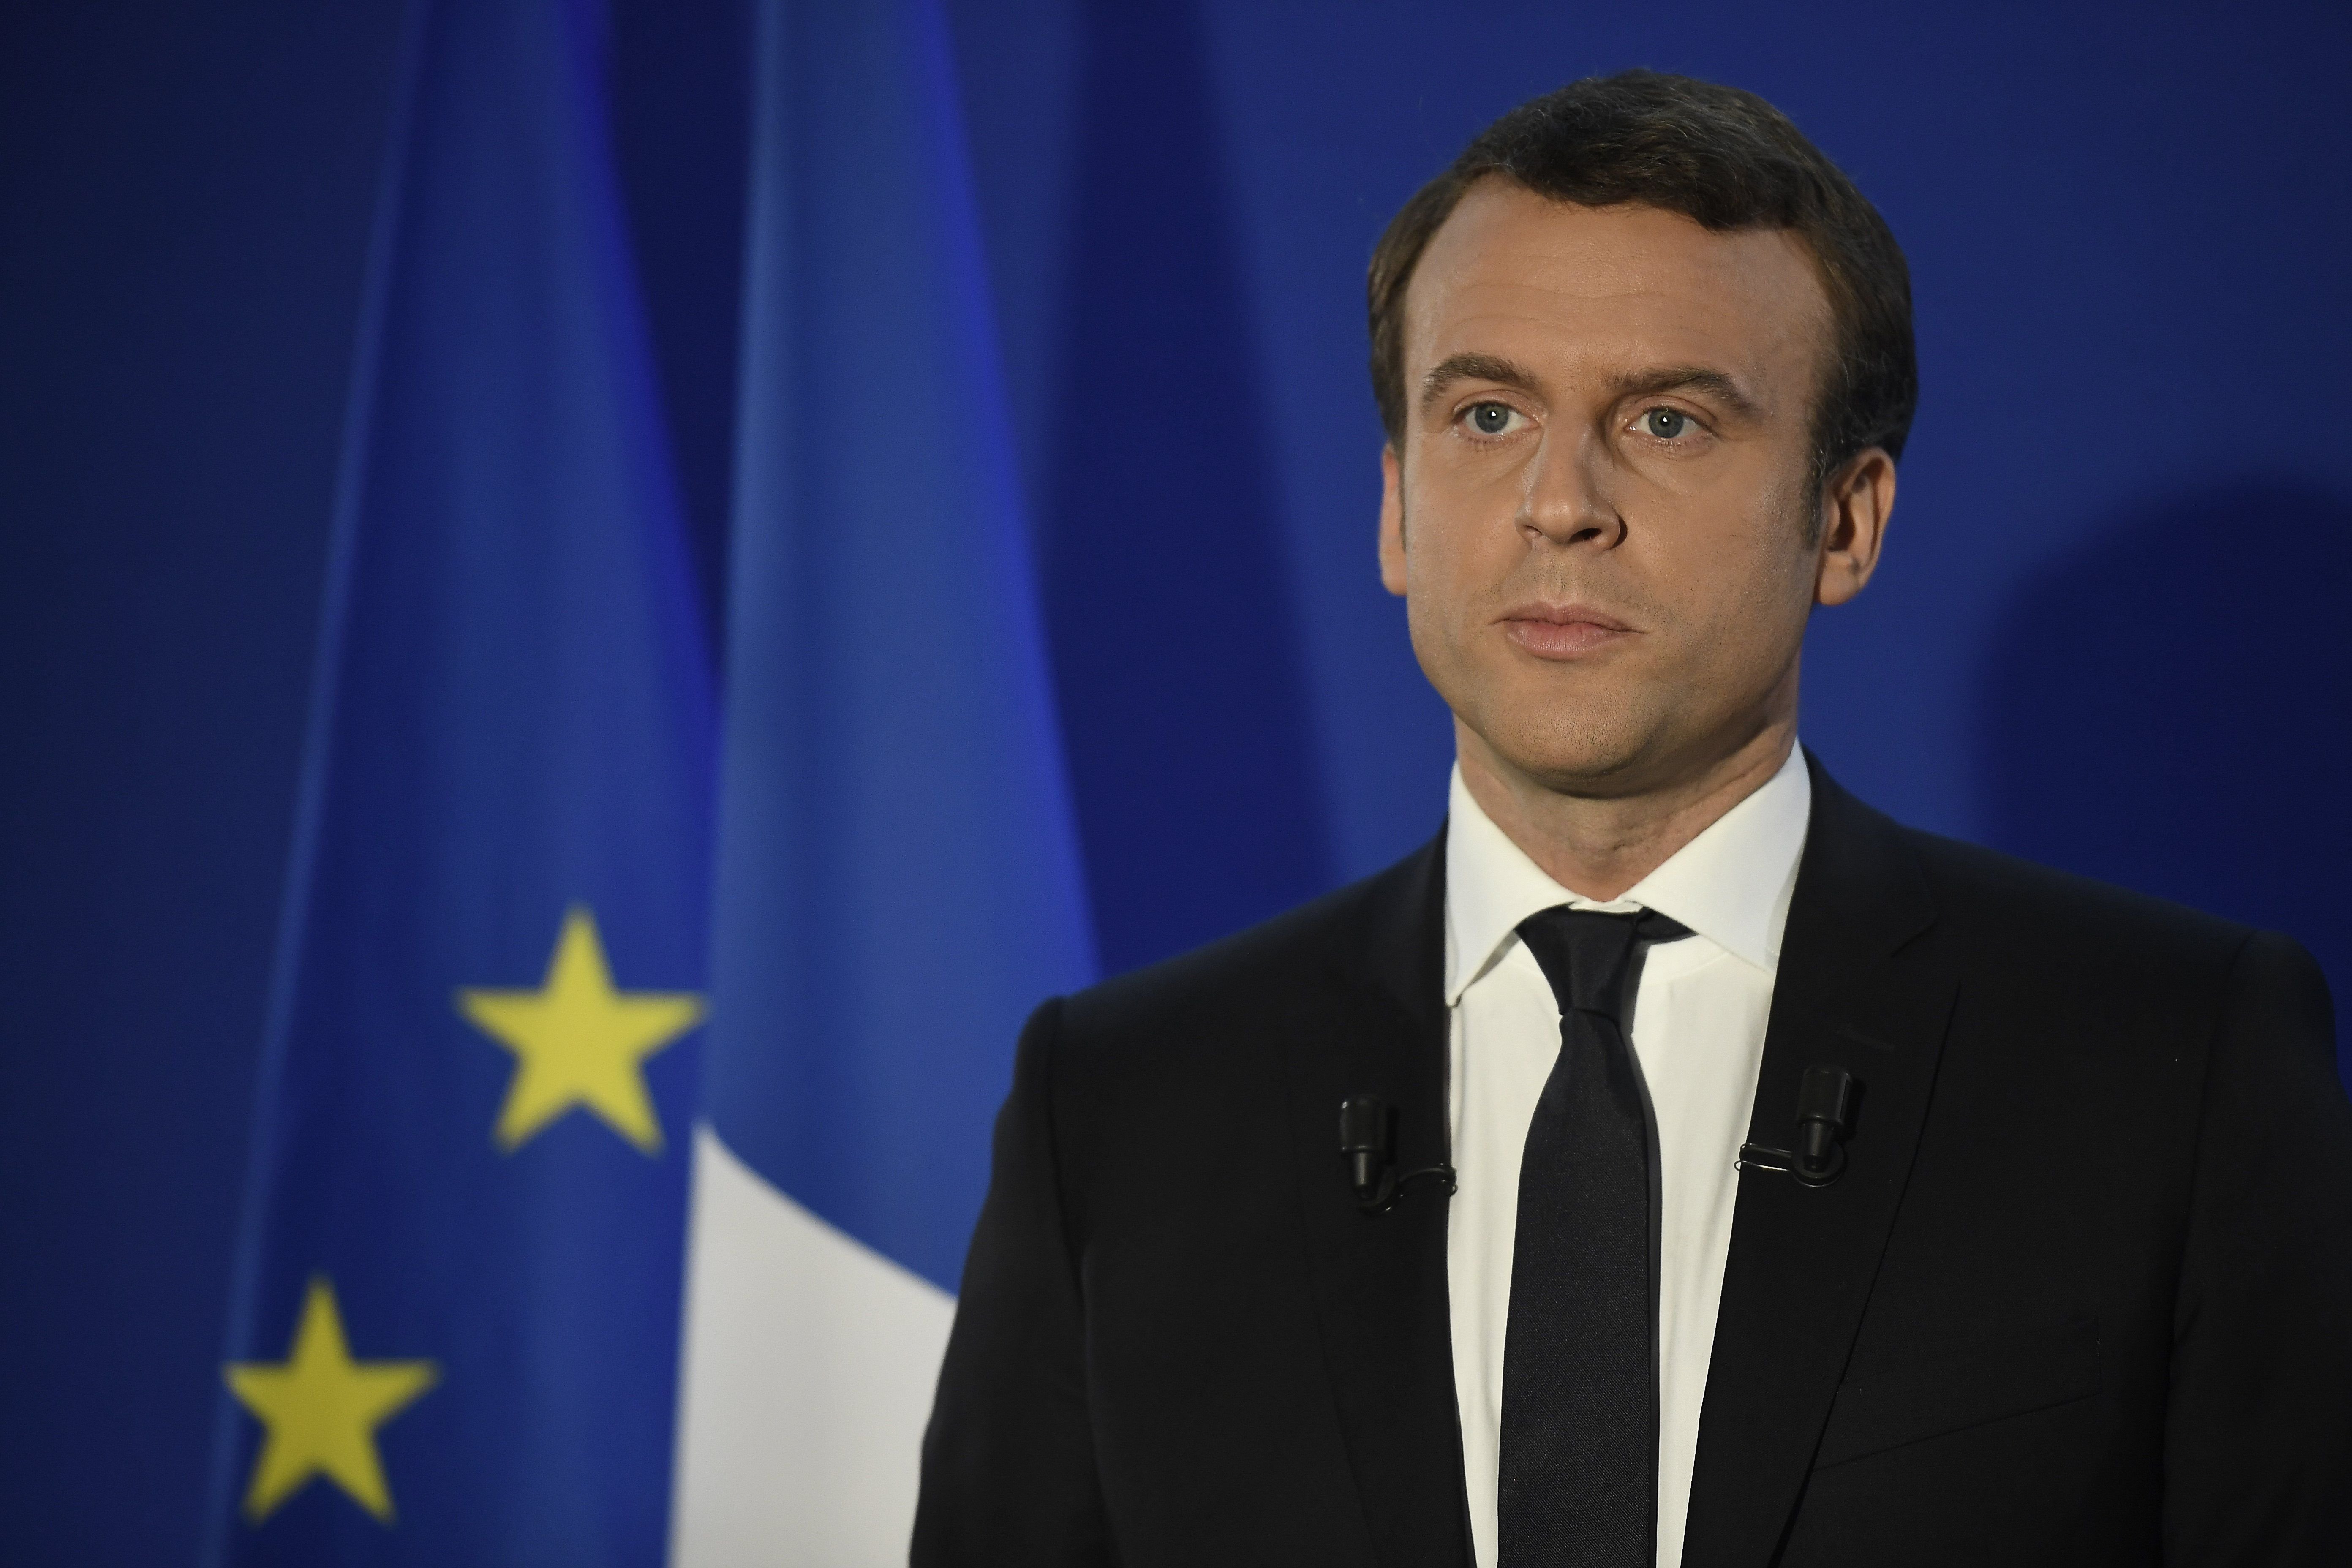 El maquillatge de Macron ha costat 26.000 euros a França en tres mesos